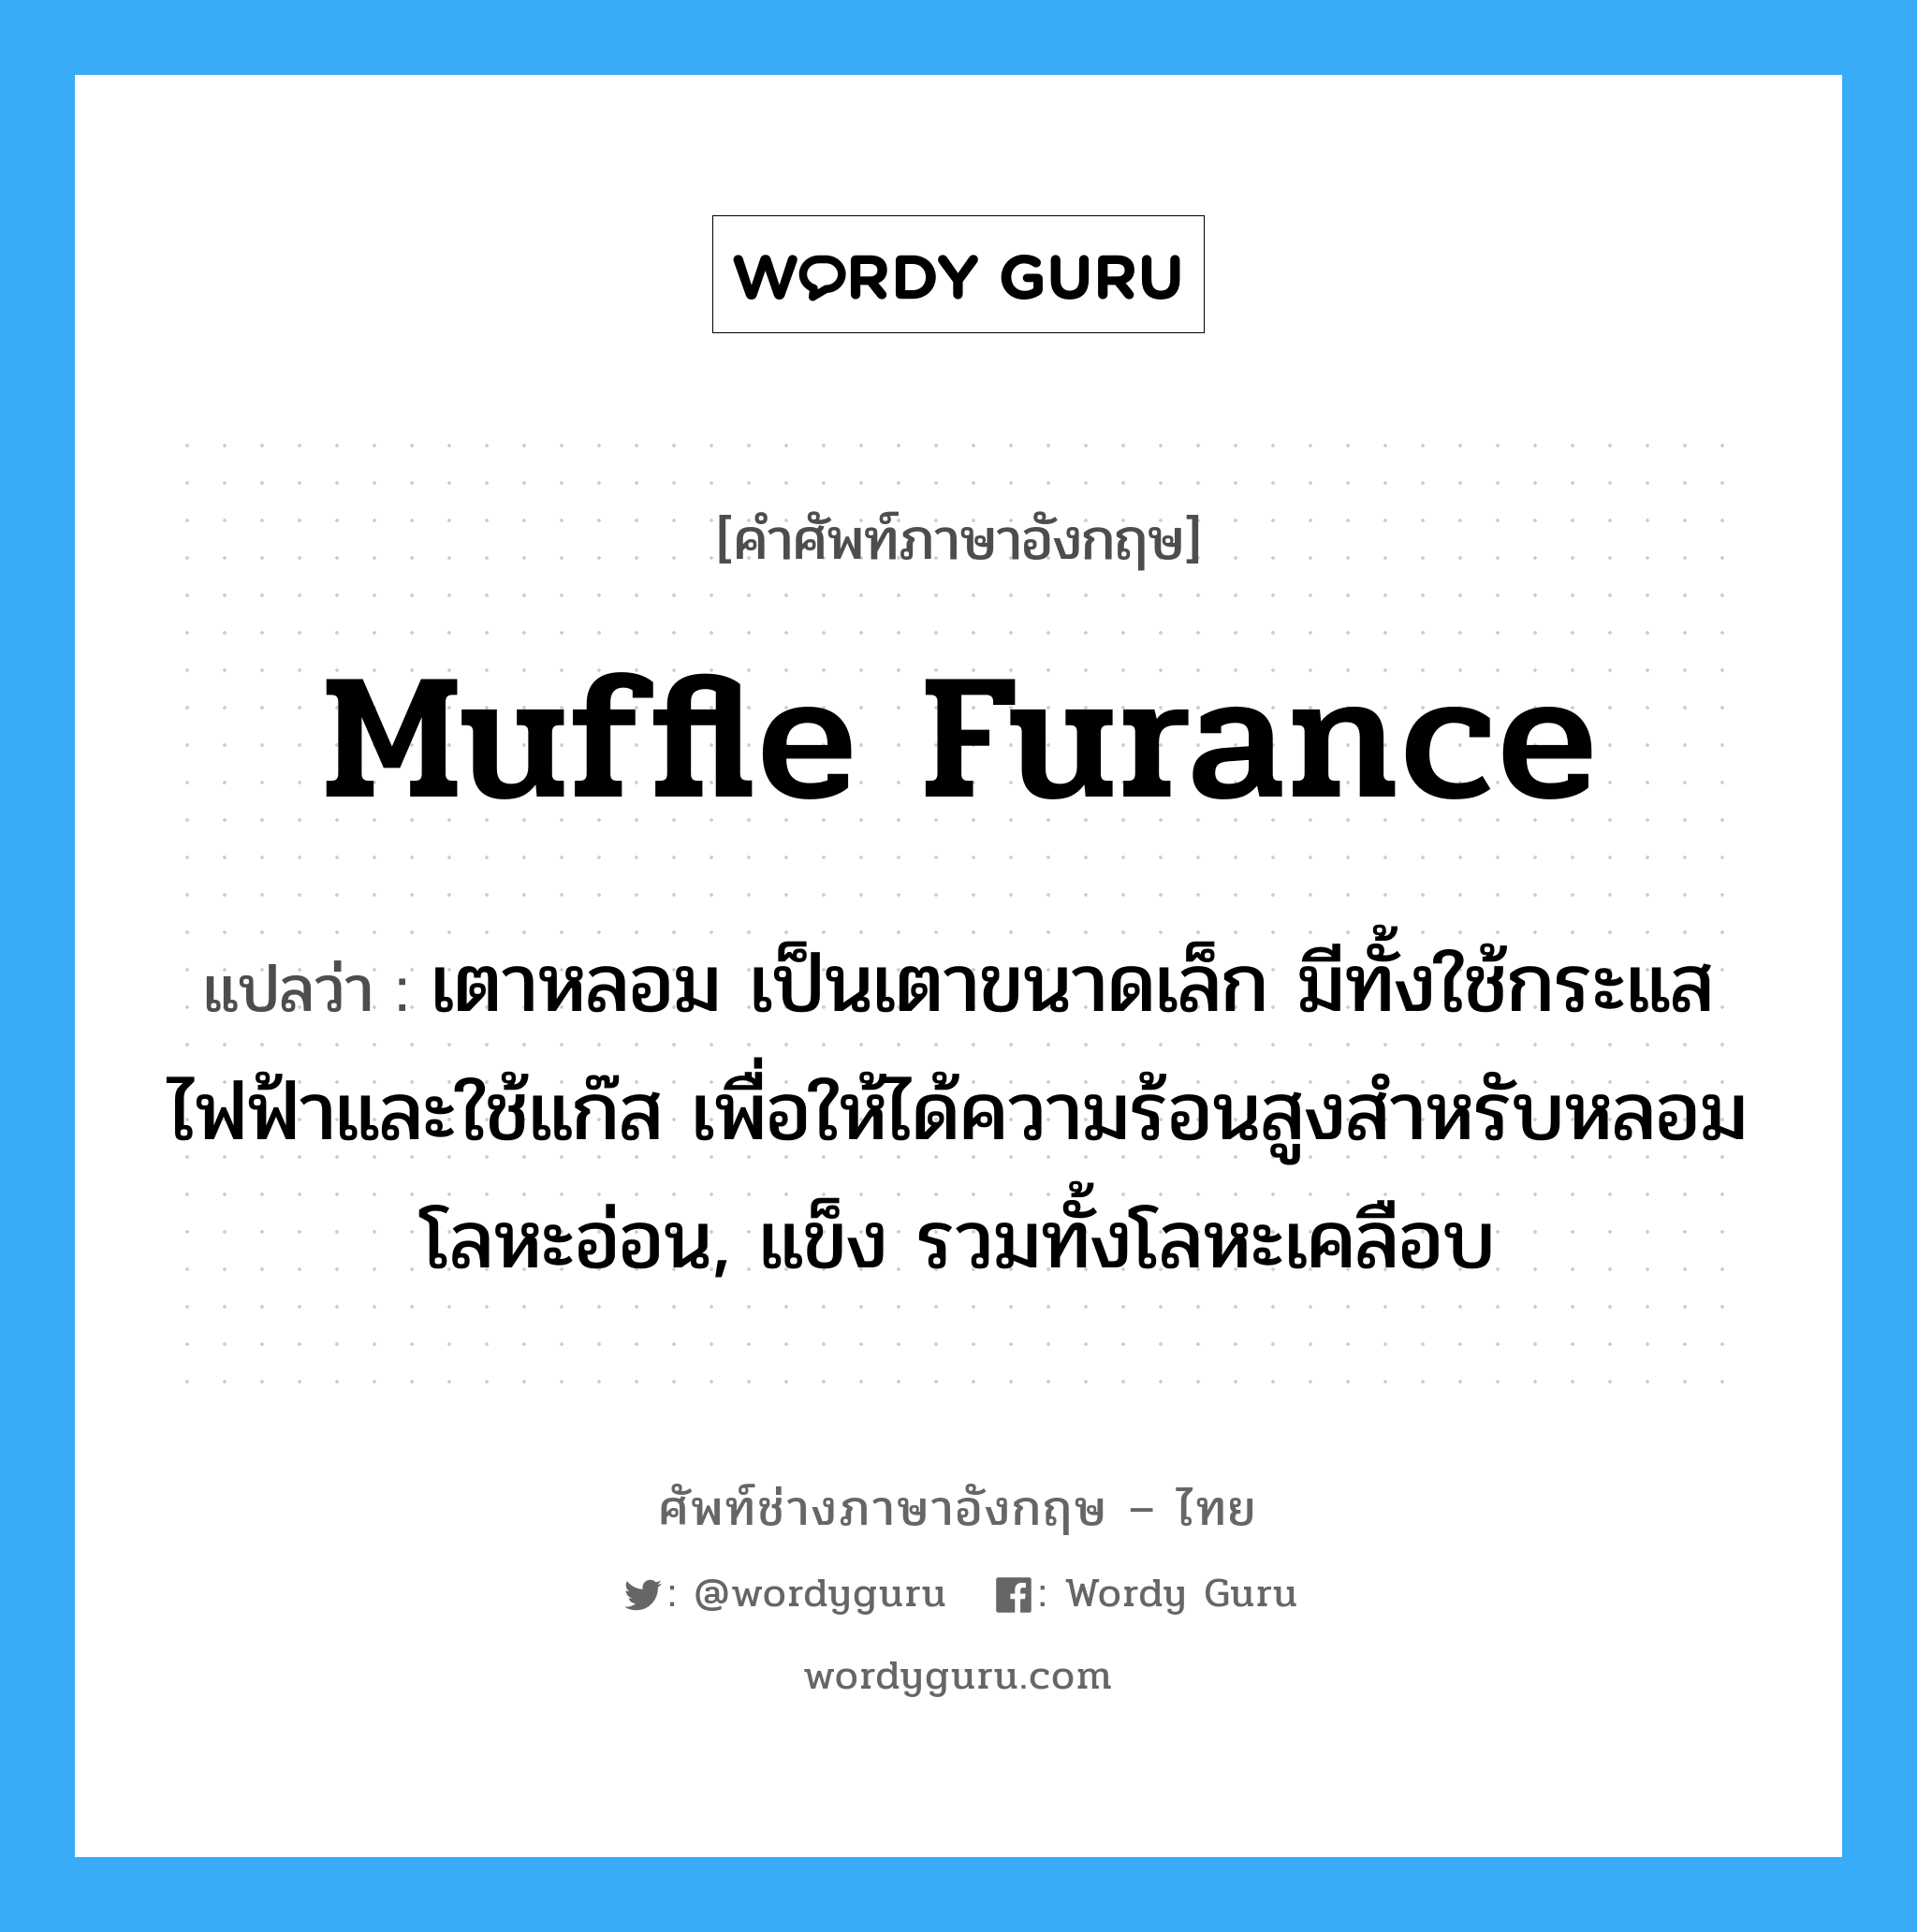 muffle furance แปลว่า?, คำศัพท์ช่างภาษาอังกฤษ - ไทย muffle furance คำศัพท์ภาษาอังกฤษ muffle furance แปลว่า เตาหลอม เป็นเตาขนาดเล็ก มีทั้งใช้กระแสไฟฟ้าและใช้แก๊ส เพื่อให้ได้ความร้อนสูงสำหรับหลอมโลหะอ่อน, แข็ง รวมทั้งโลหะเคลือบ